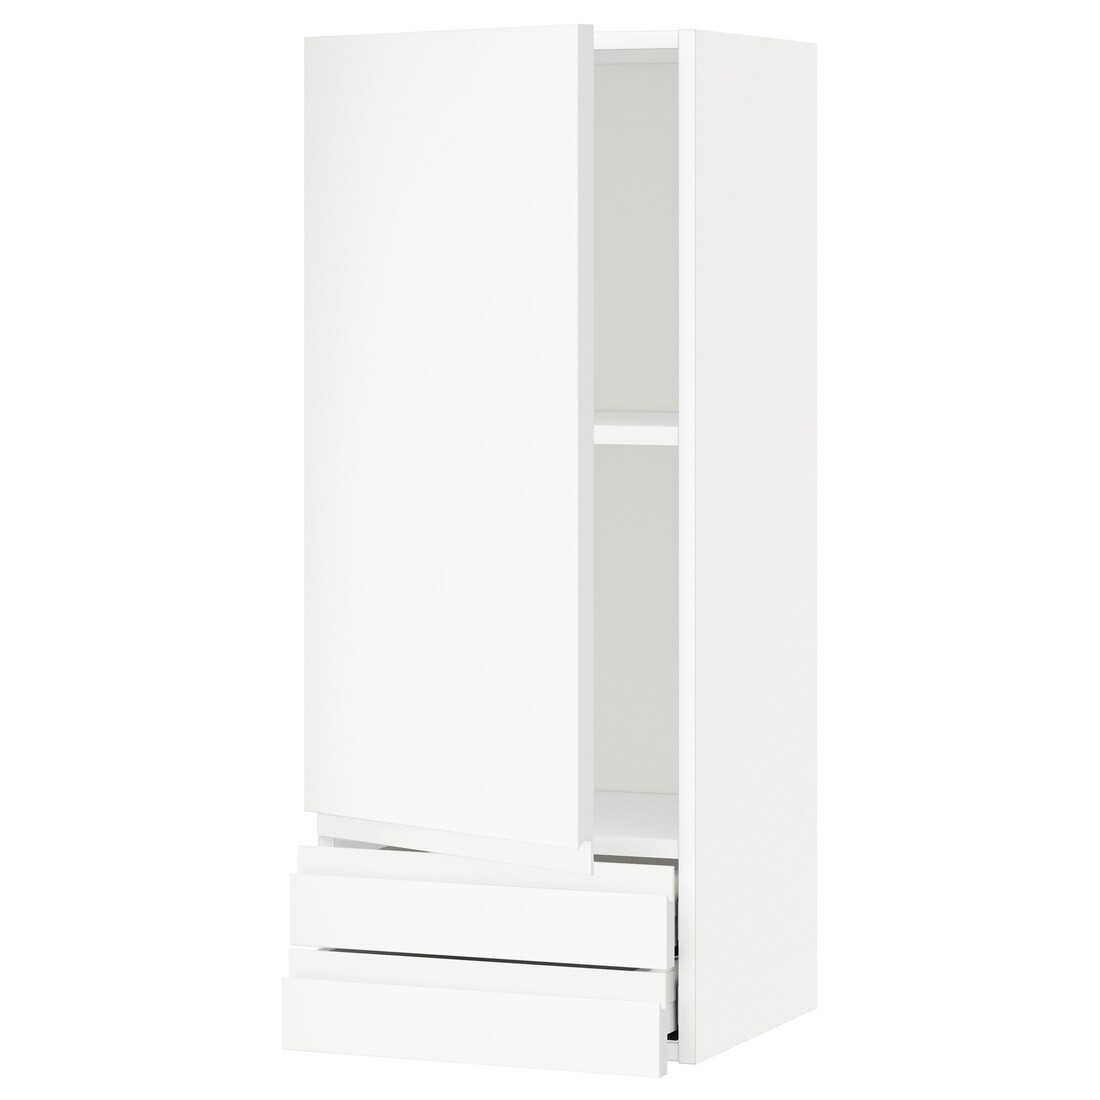 IKEA METOD МЕТОД / MAXIMERA МАКСИМЕРА Настенный шкаф, дверь / 2 ящика, белый / Voxtorp матовый белый, 40x100 см 09464948 | 094.649.48